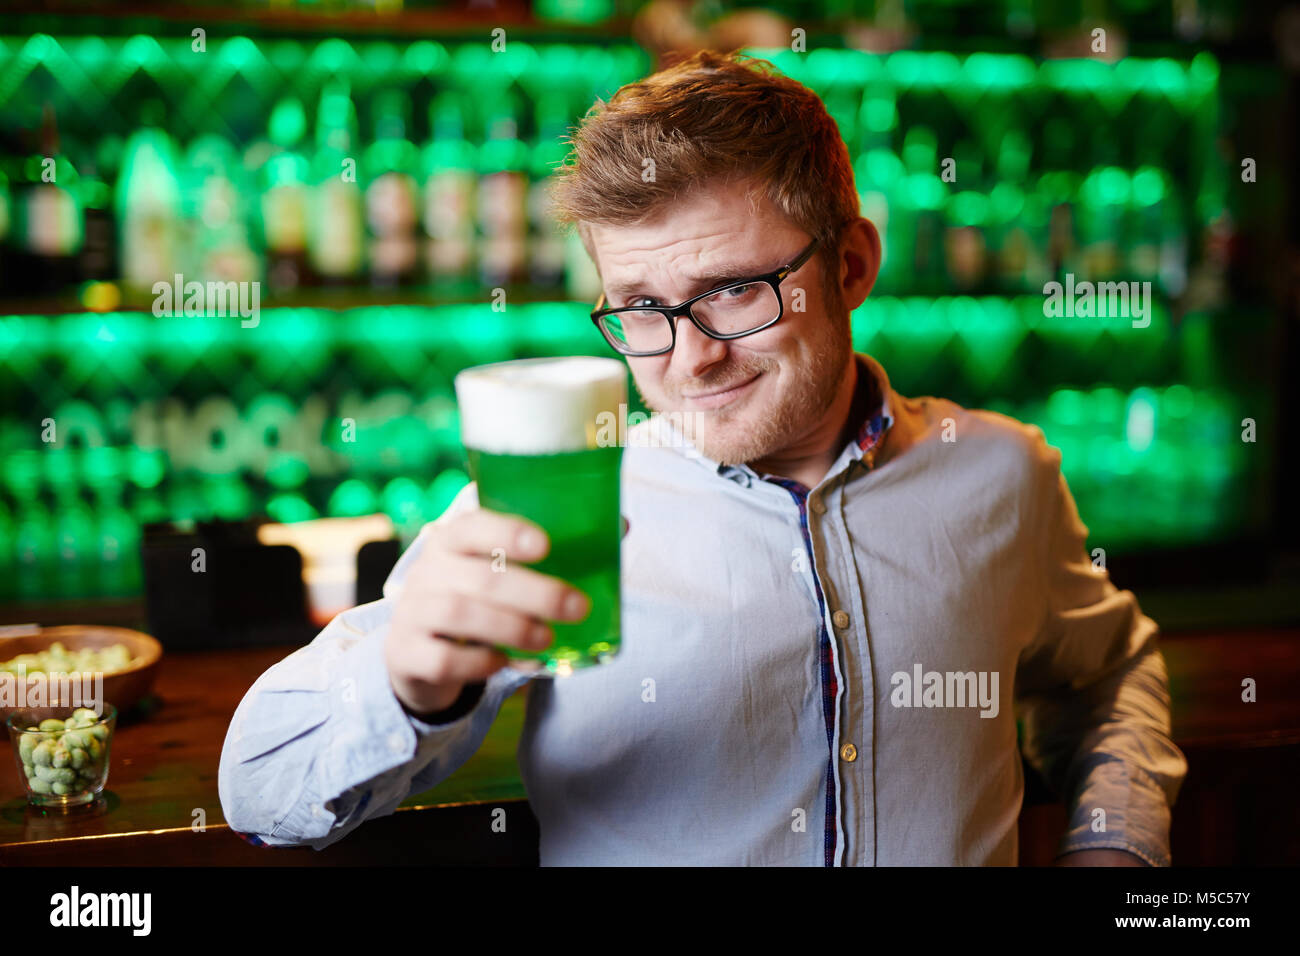 Guy toasting Stock Photo